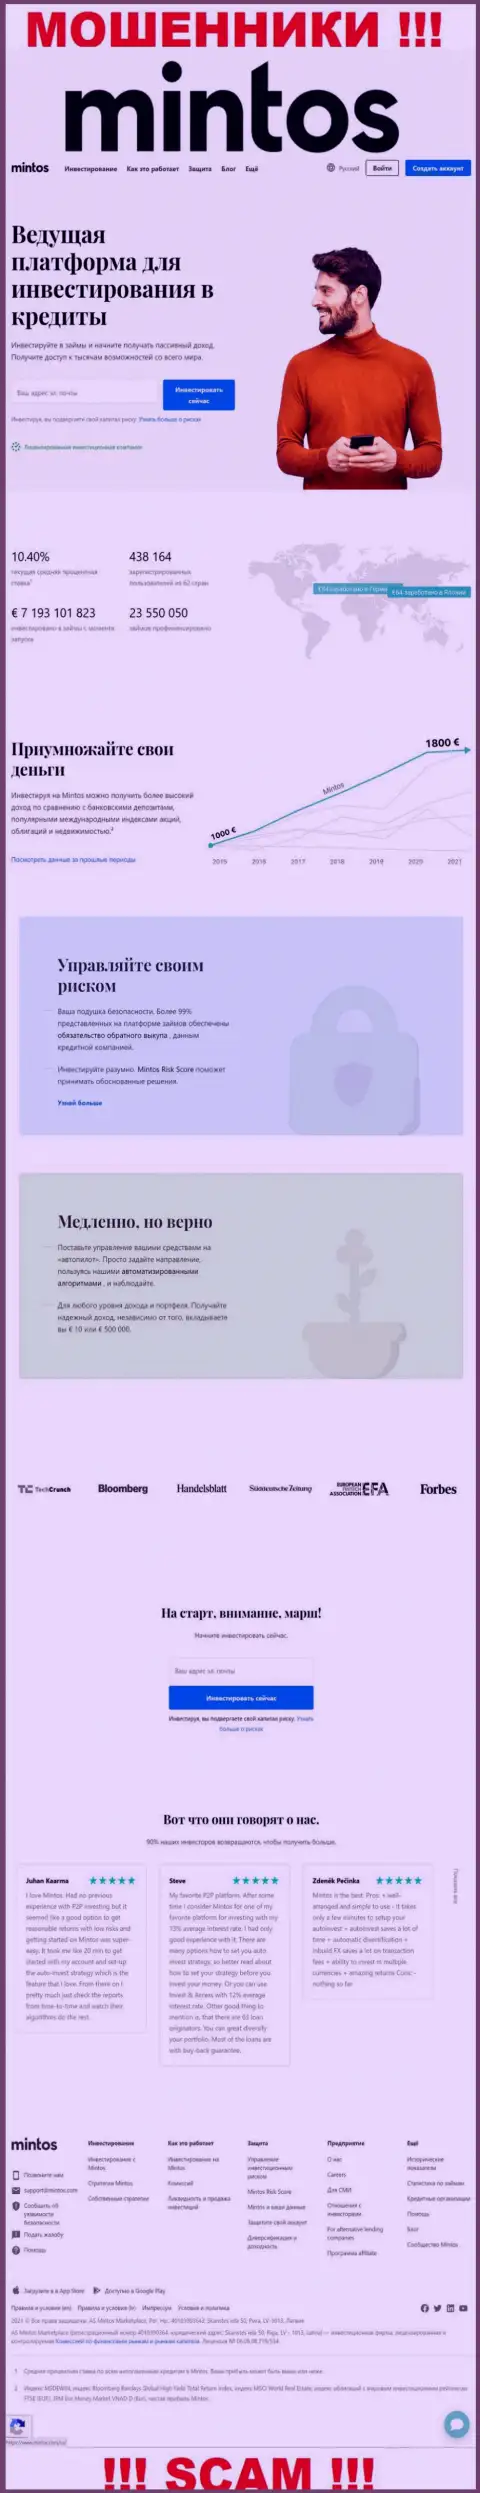 Официальная internet страничка мошеннического проекта Минтос